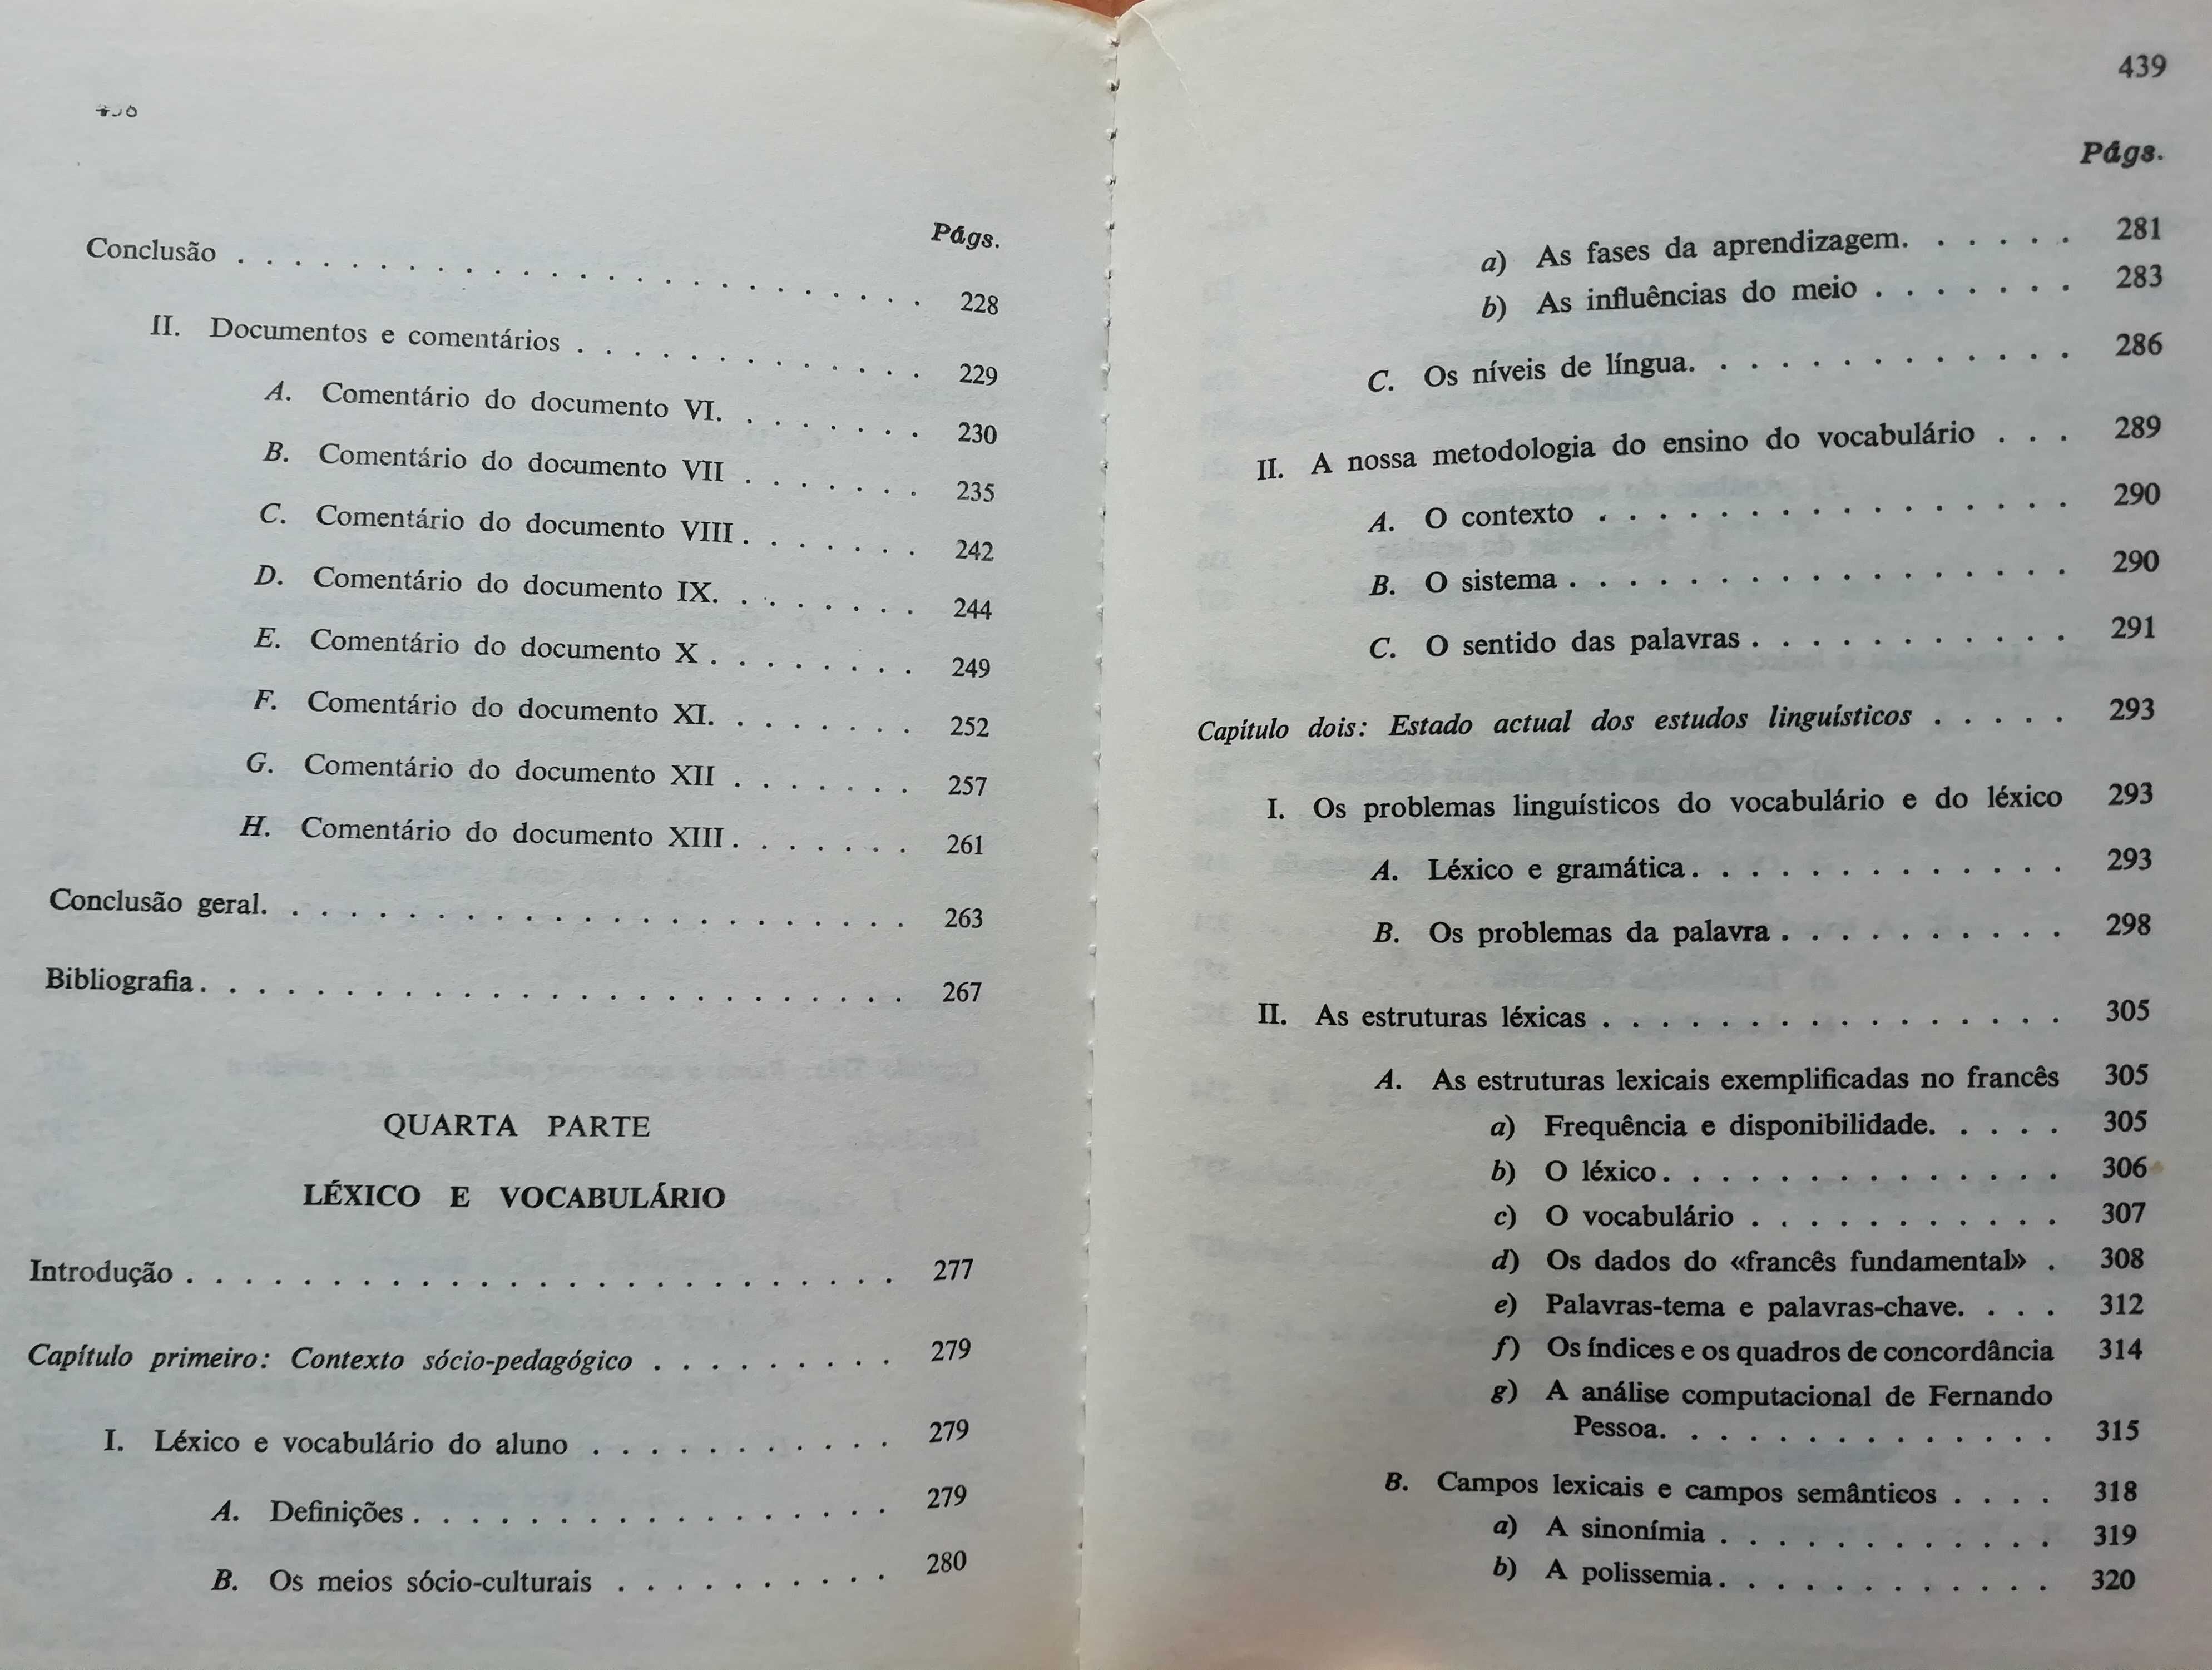 Linguística e Ensino do Português - Genouvrier e Peytard